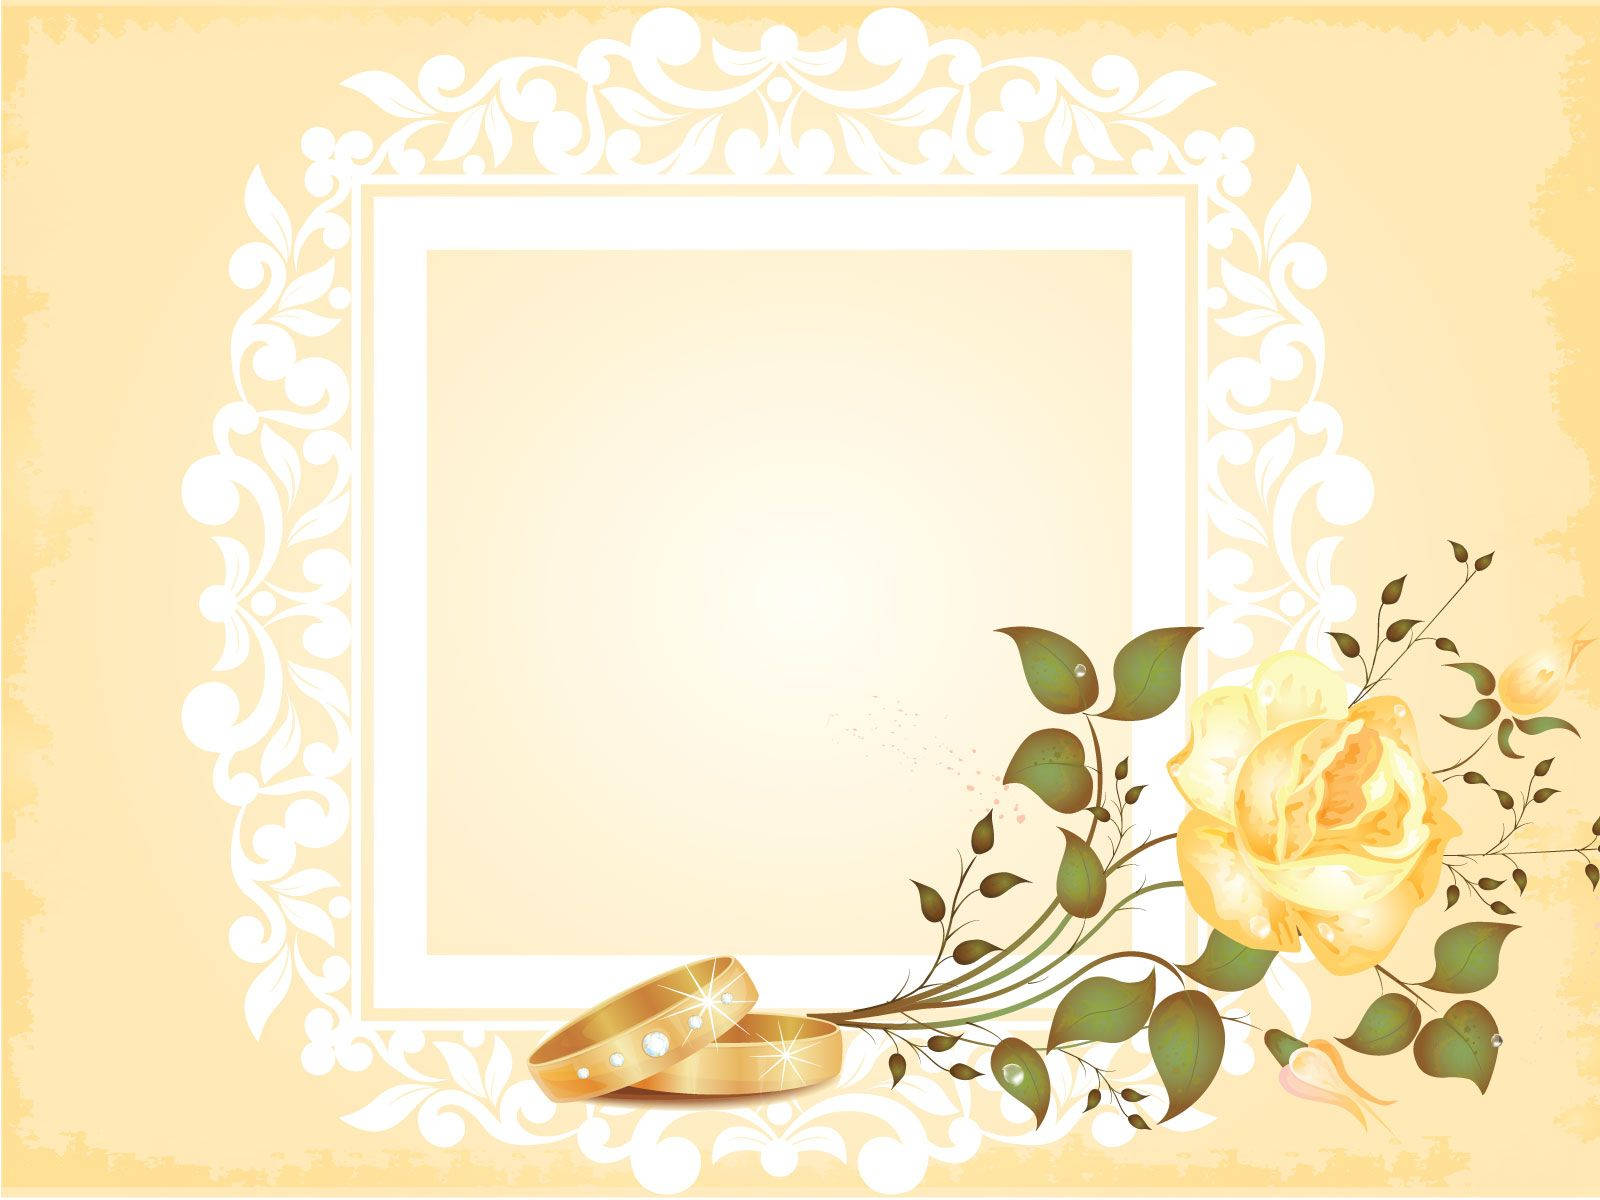 Caption: Vibrant Wedding Album With Yellow Flowers